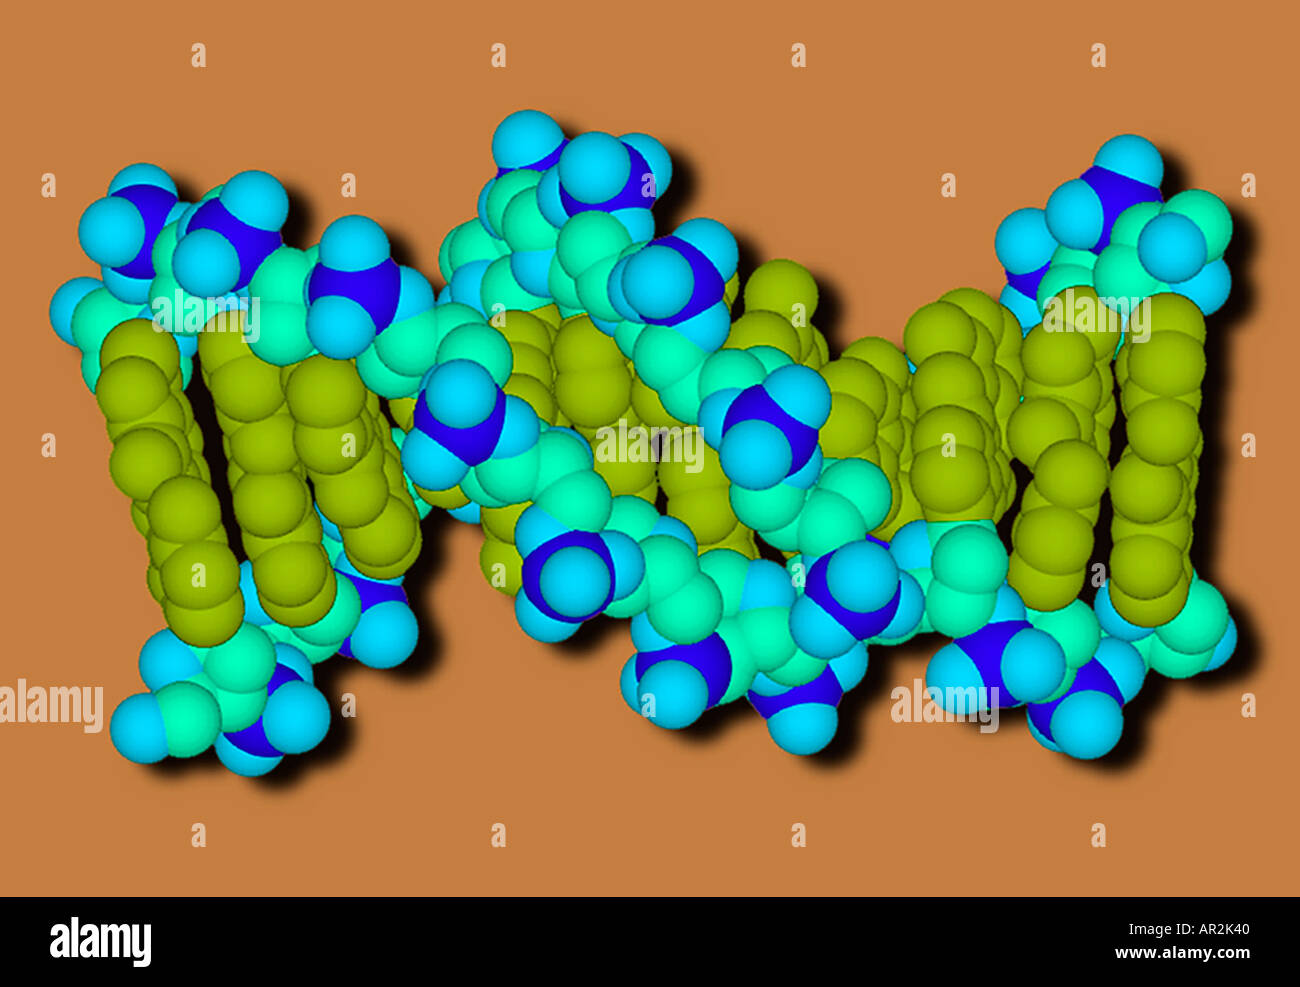 Il modello molecolare di una molecola di DNA che mostra le coppie di basi in verde e la spina dorsale dello zucchero fosfato in sfumature di blu Foto Stock